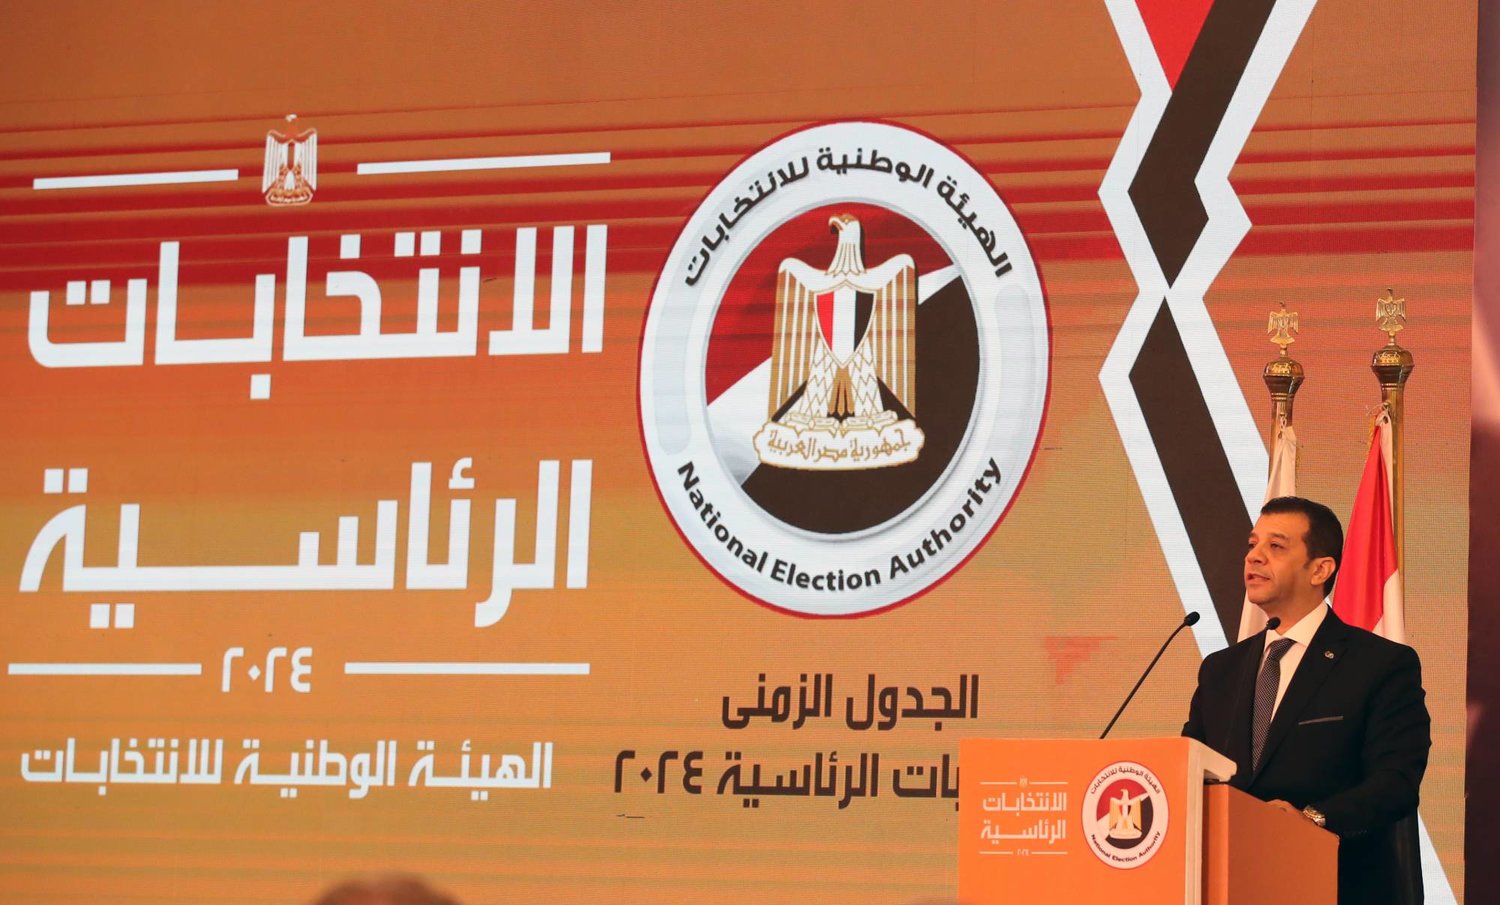 رئيس الهيئة الوطنية للانتخابات في مصر يعلن الجدول الزمني للاستحقاق الرئاسي (إ.ب.أ)